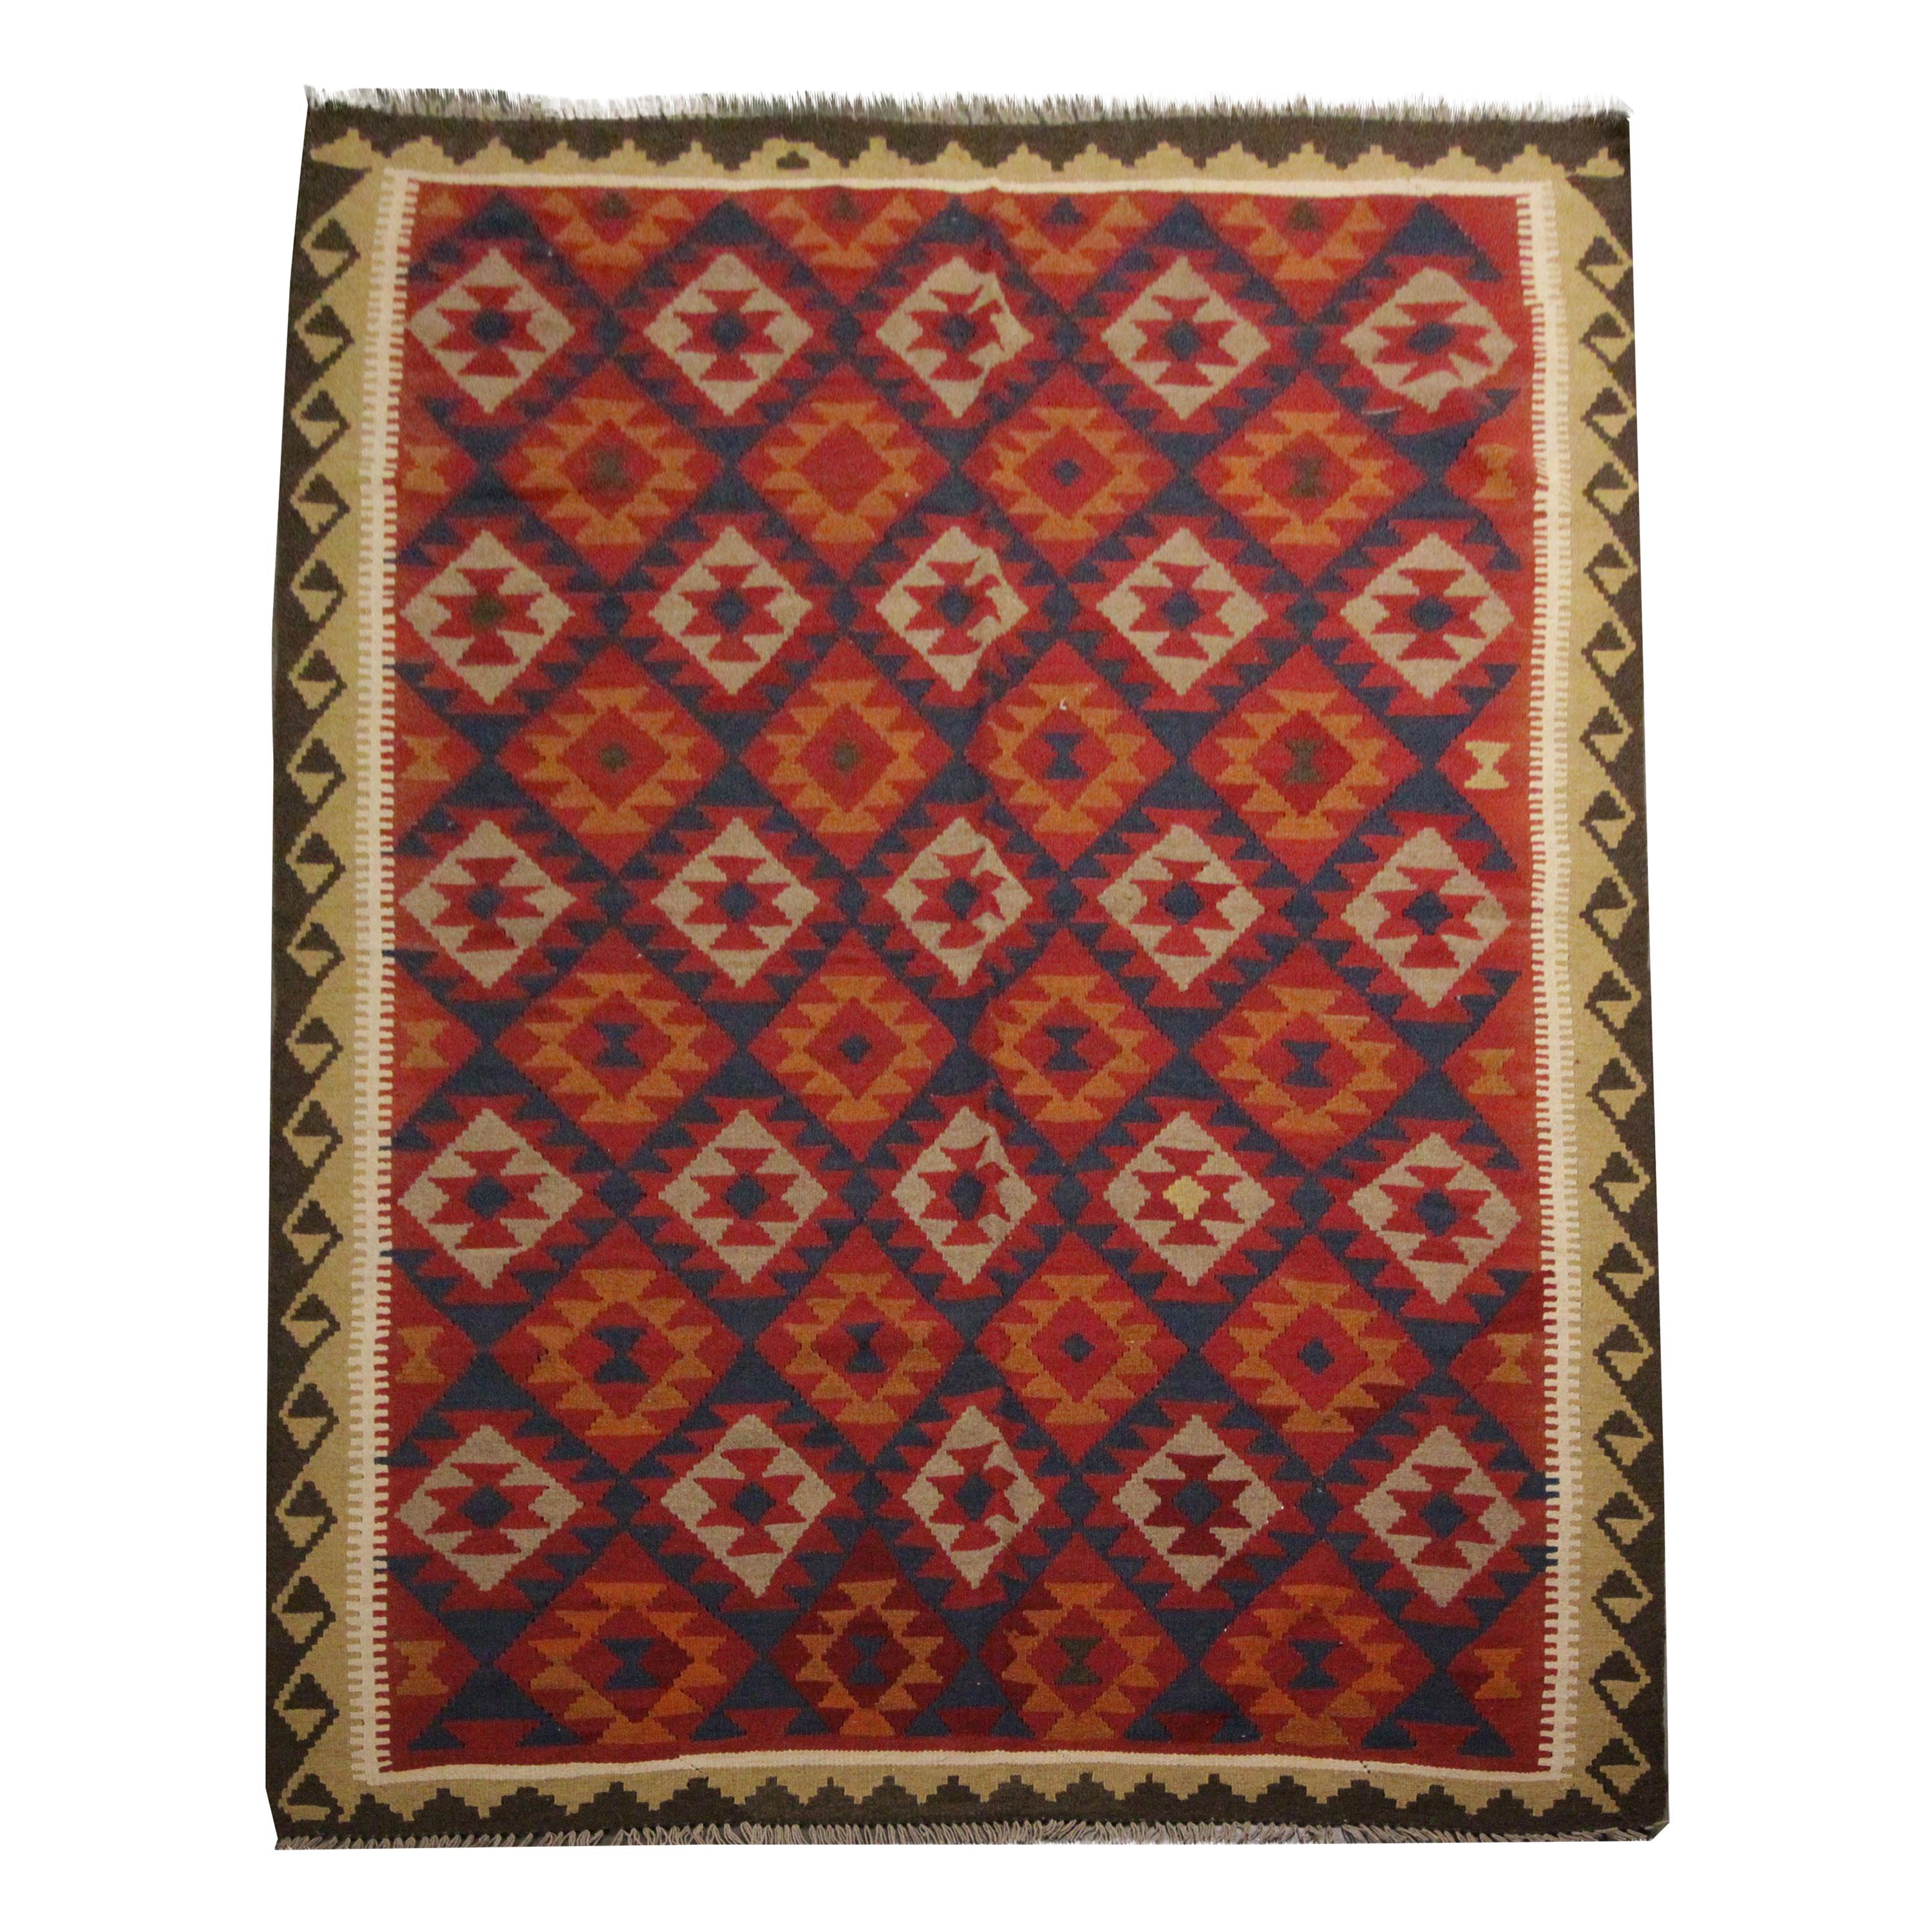 Tapis traditionnel artisanal en laine Kilim Tapis orange à motifs géométriques